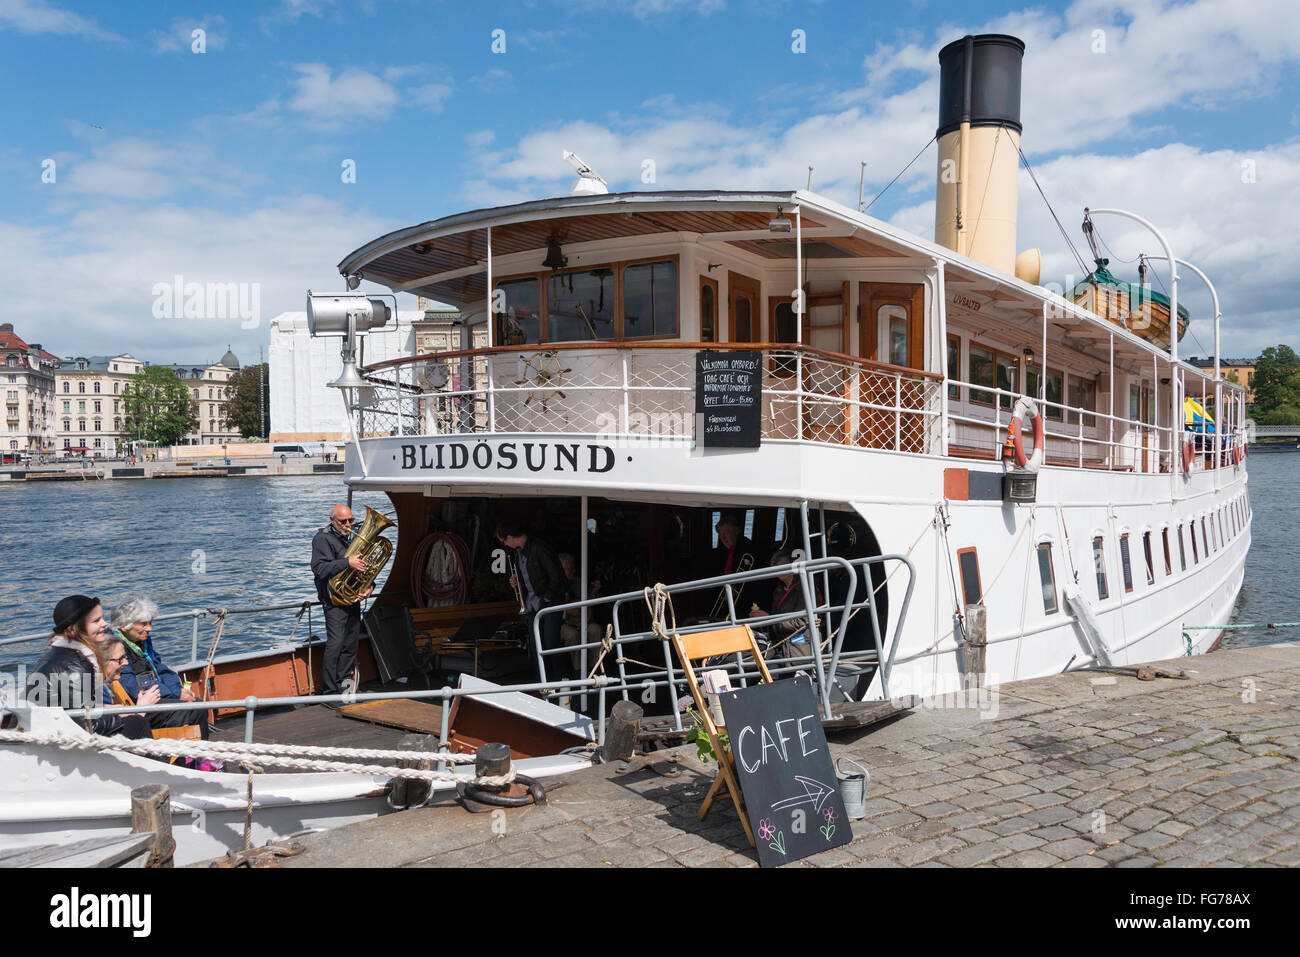 Cafe a bordo del barco de vapor Blidosund, Gamla Stan (Ciudad Vieja), Stadsholmen, Estocolmo, Reino de Suecia Foto de stock